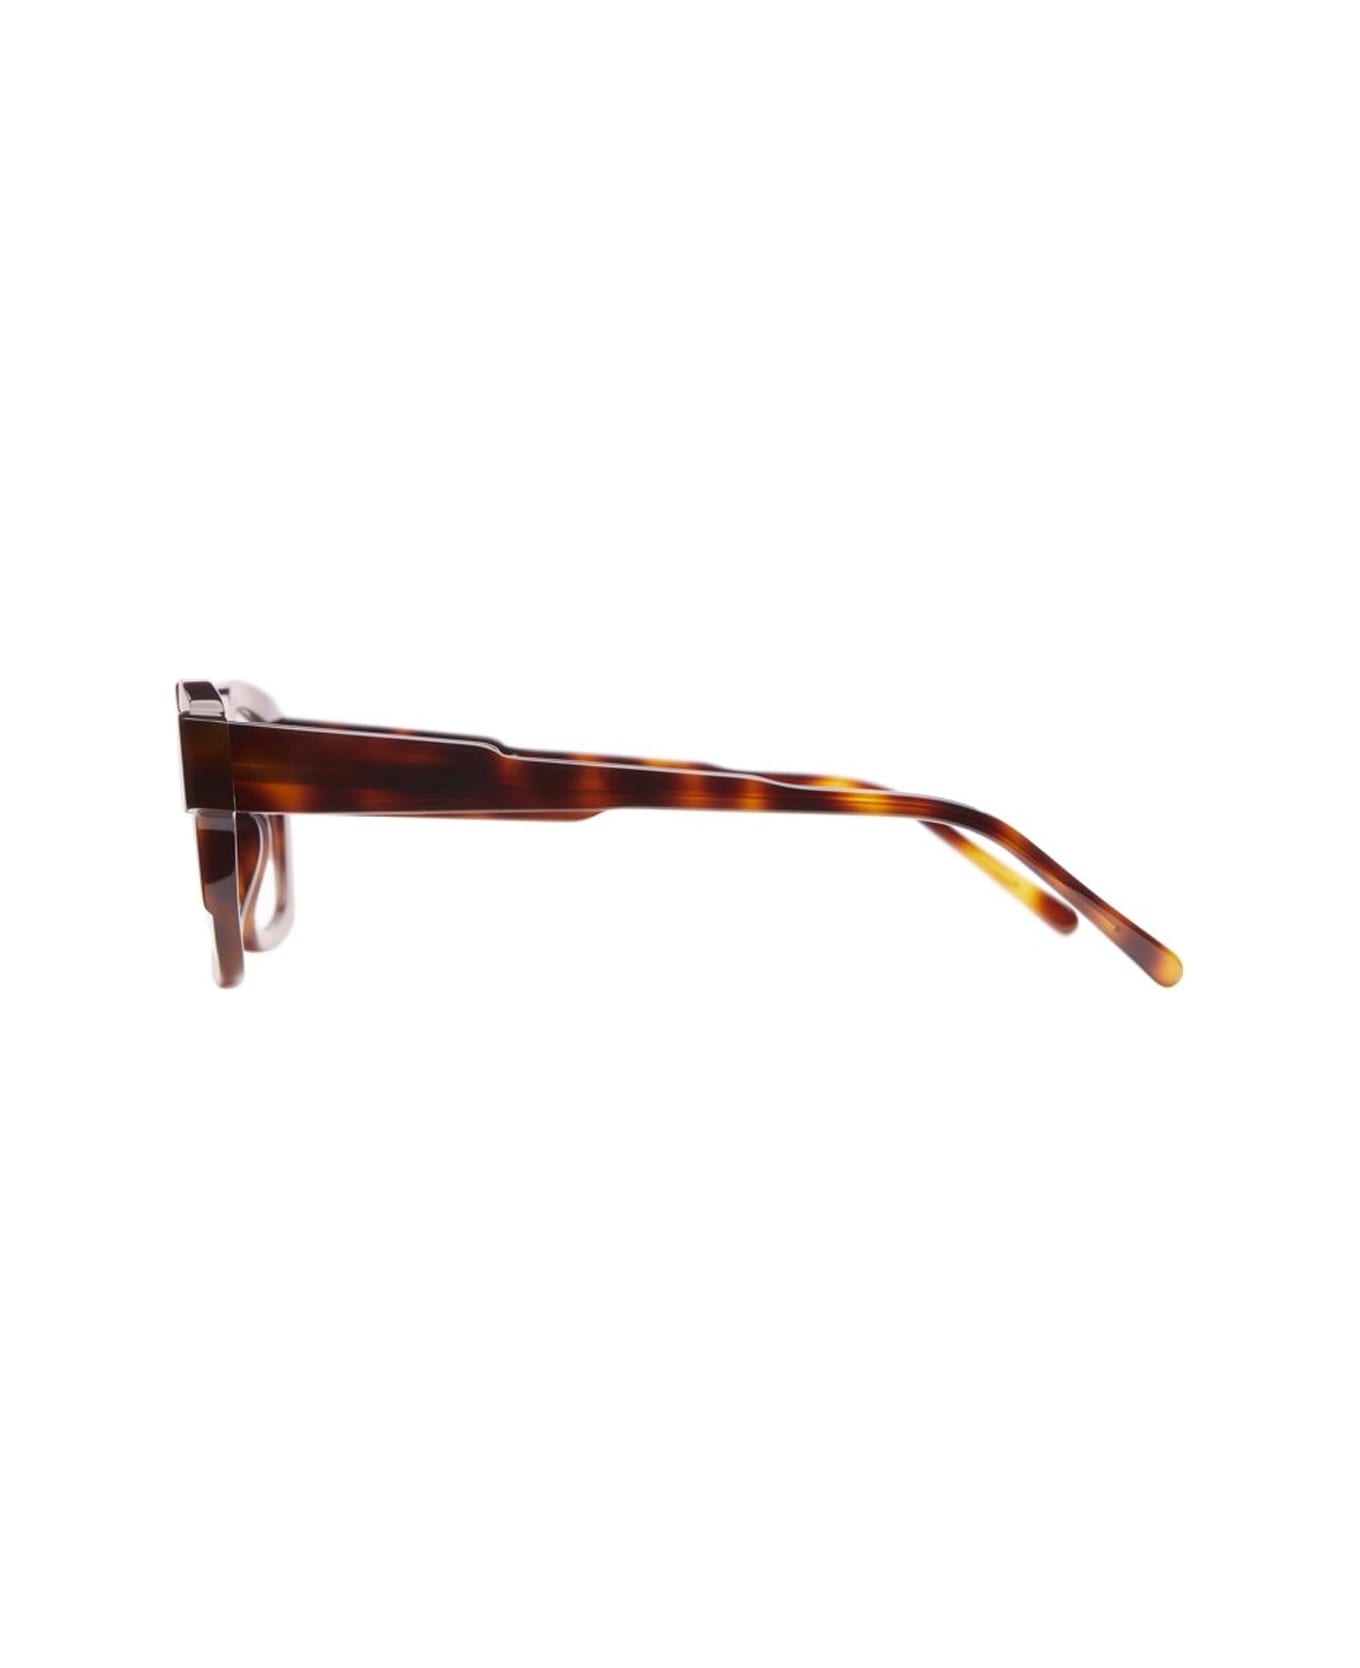 Kuboraum K18 Glasses - Marrone アイウェア